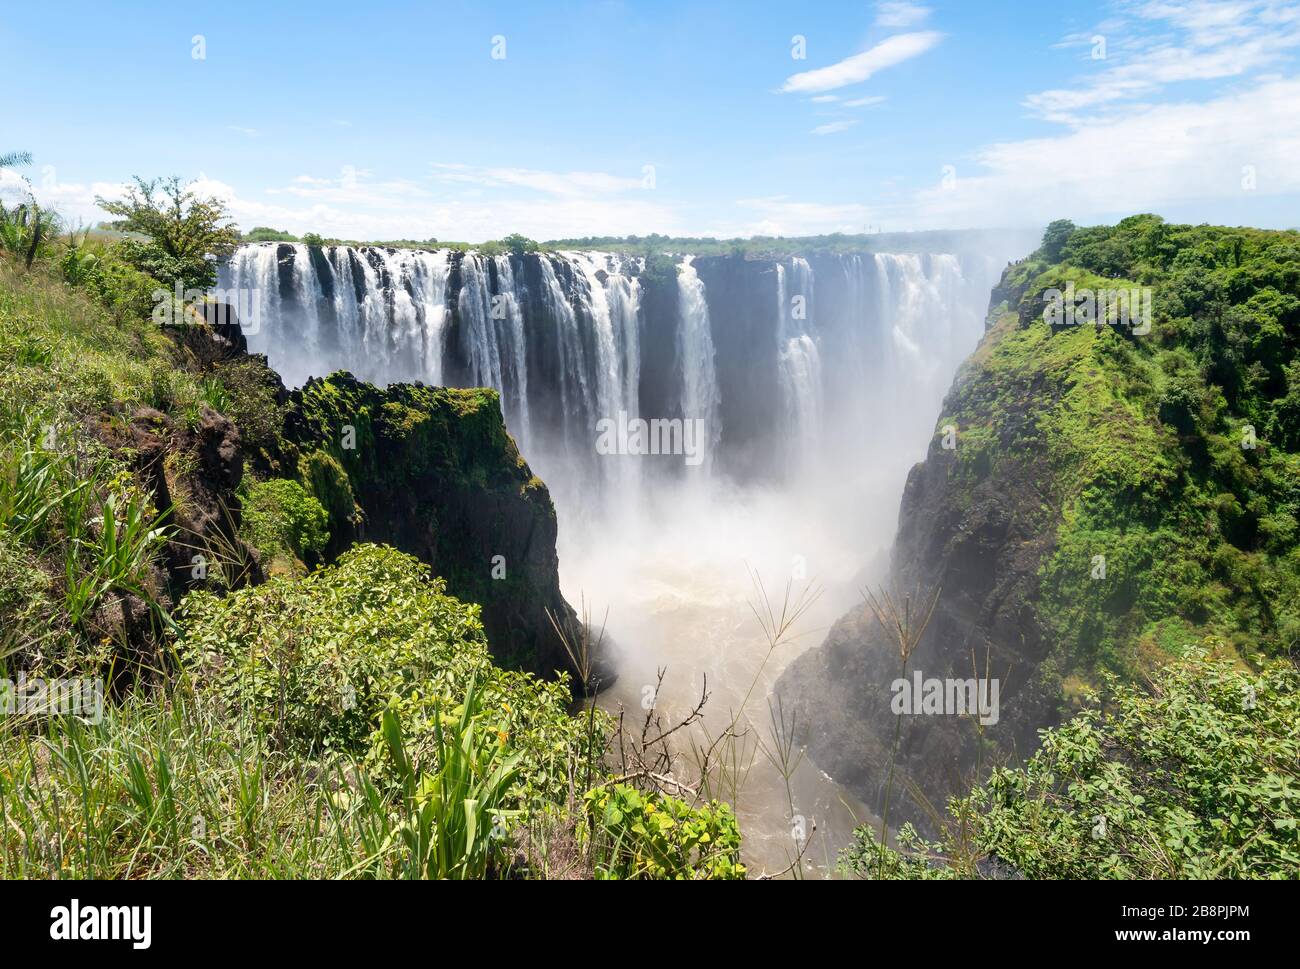 Weiter Blick auf den schönen Victoria Falls National Park von der Seite Simbabwes auf dem afrikanischen Kontinent. Wasserfälle in der Nähe der Grenze zu Sambia. Stockfoto